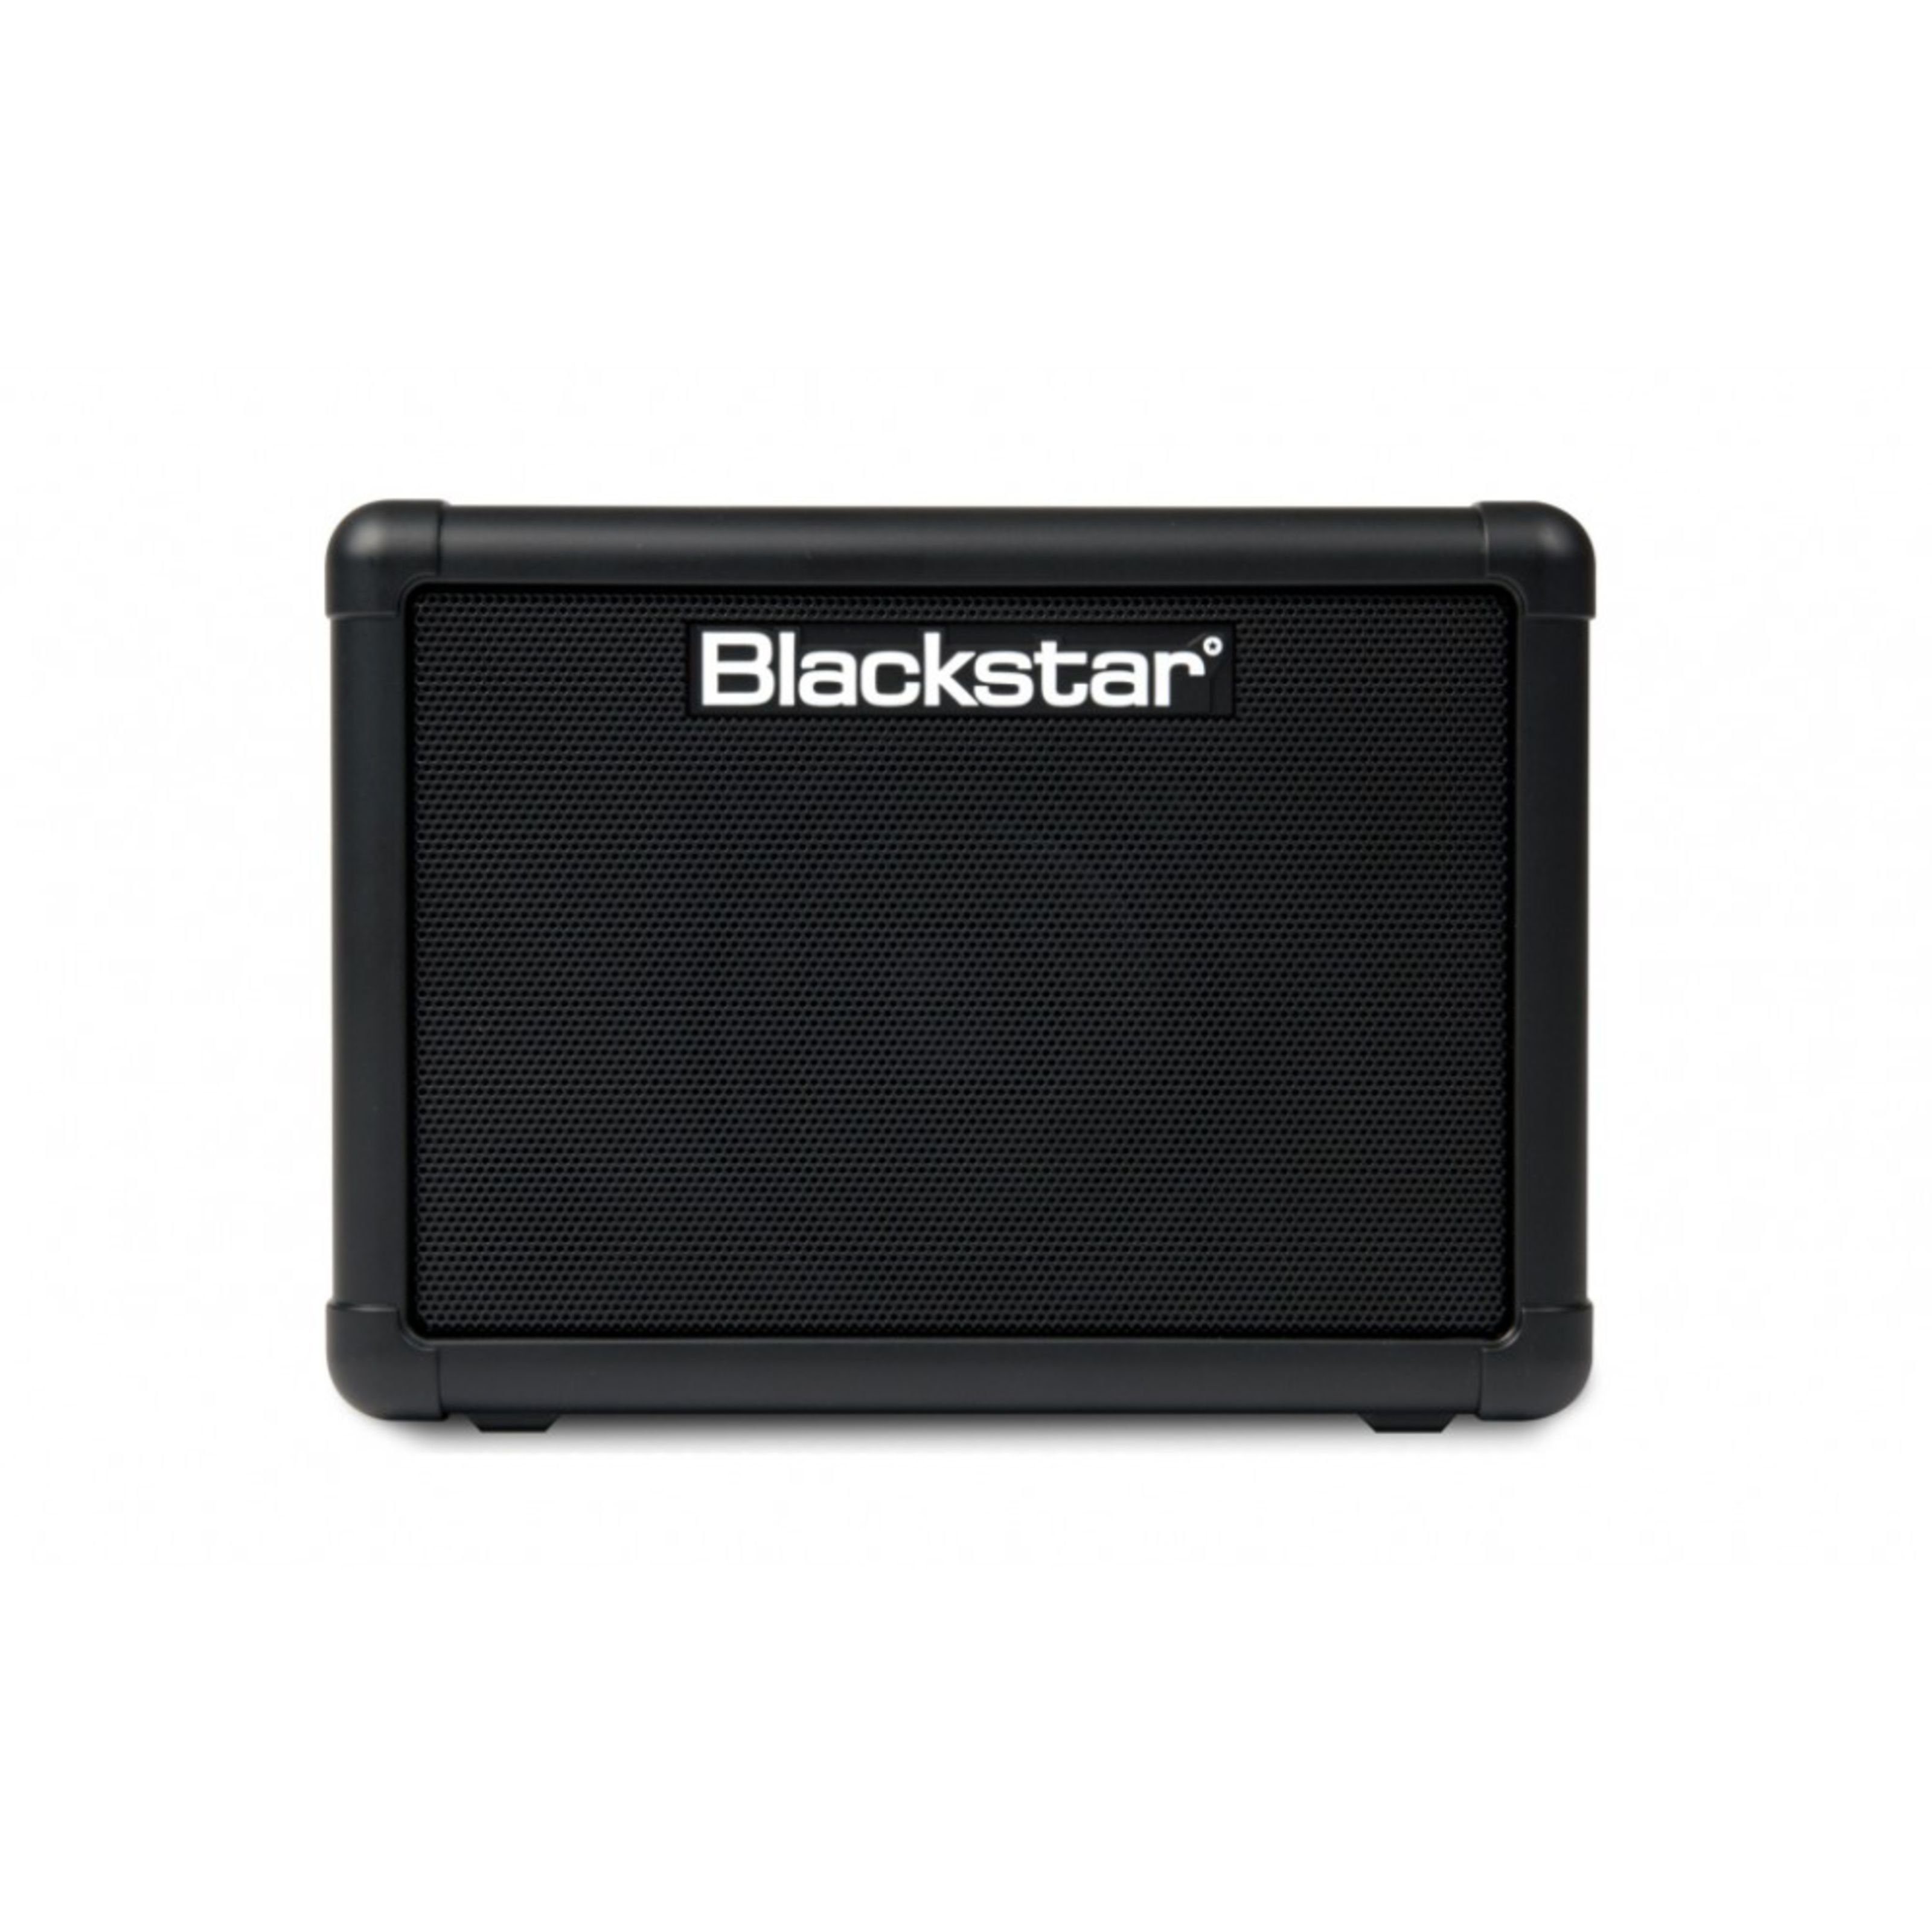 Blackstar Lautsprecher (Fly 3 Extension Cabinet - Gitarrenbox)